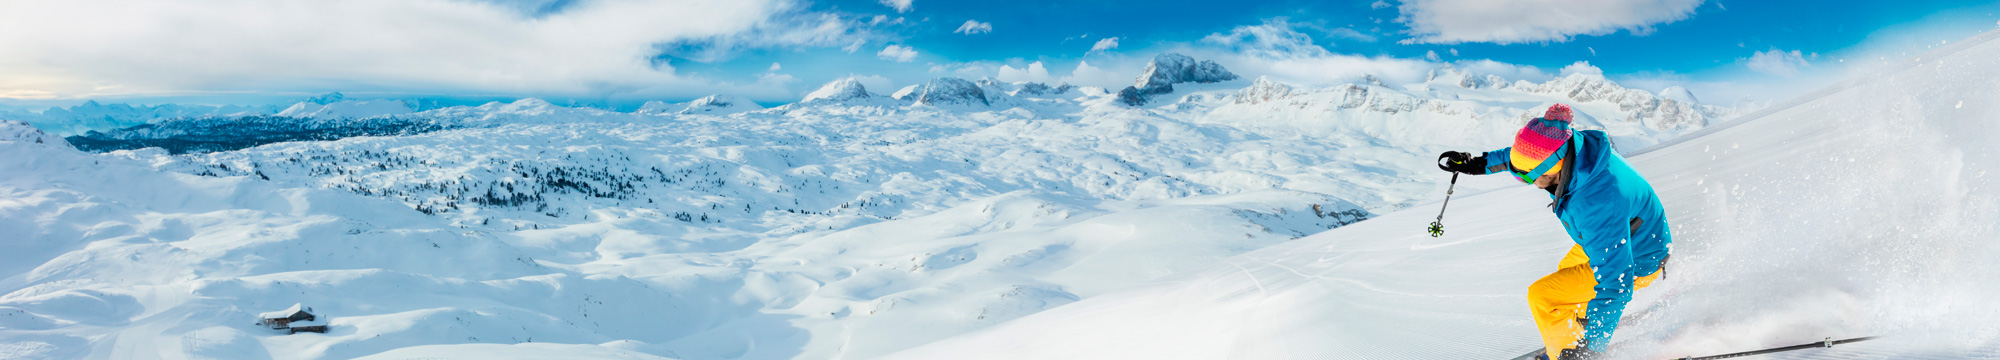 Esquí als Alps Francesos